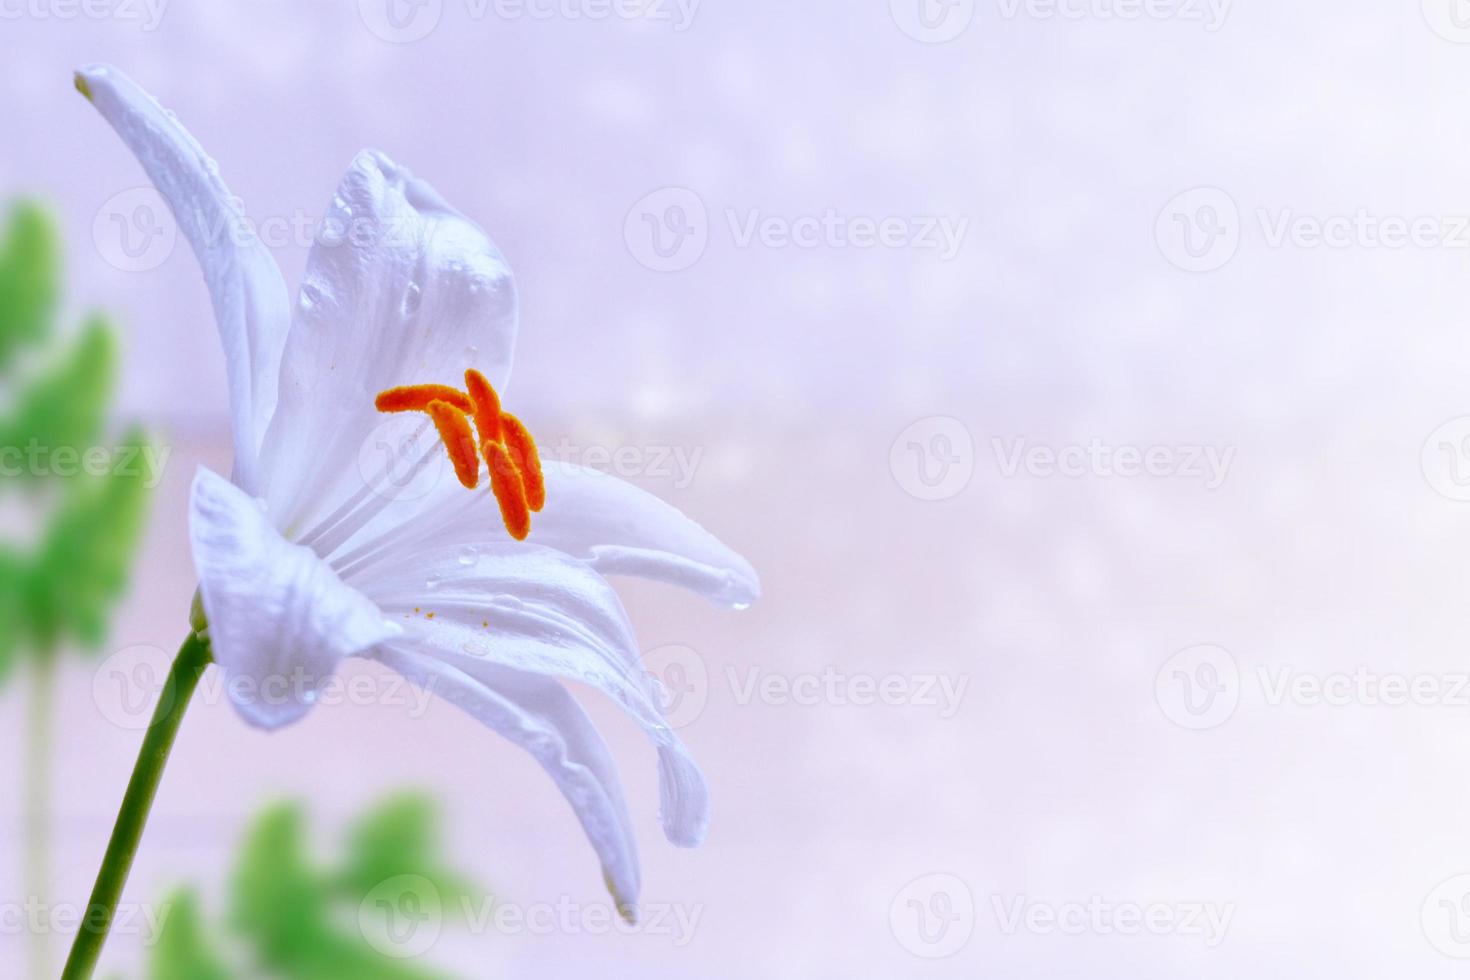 fleurs de lys aux couleurs vives. fond fleuri. photo